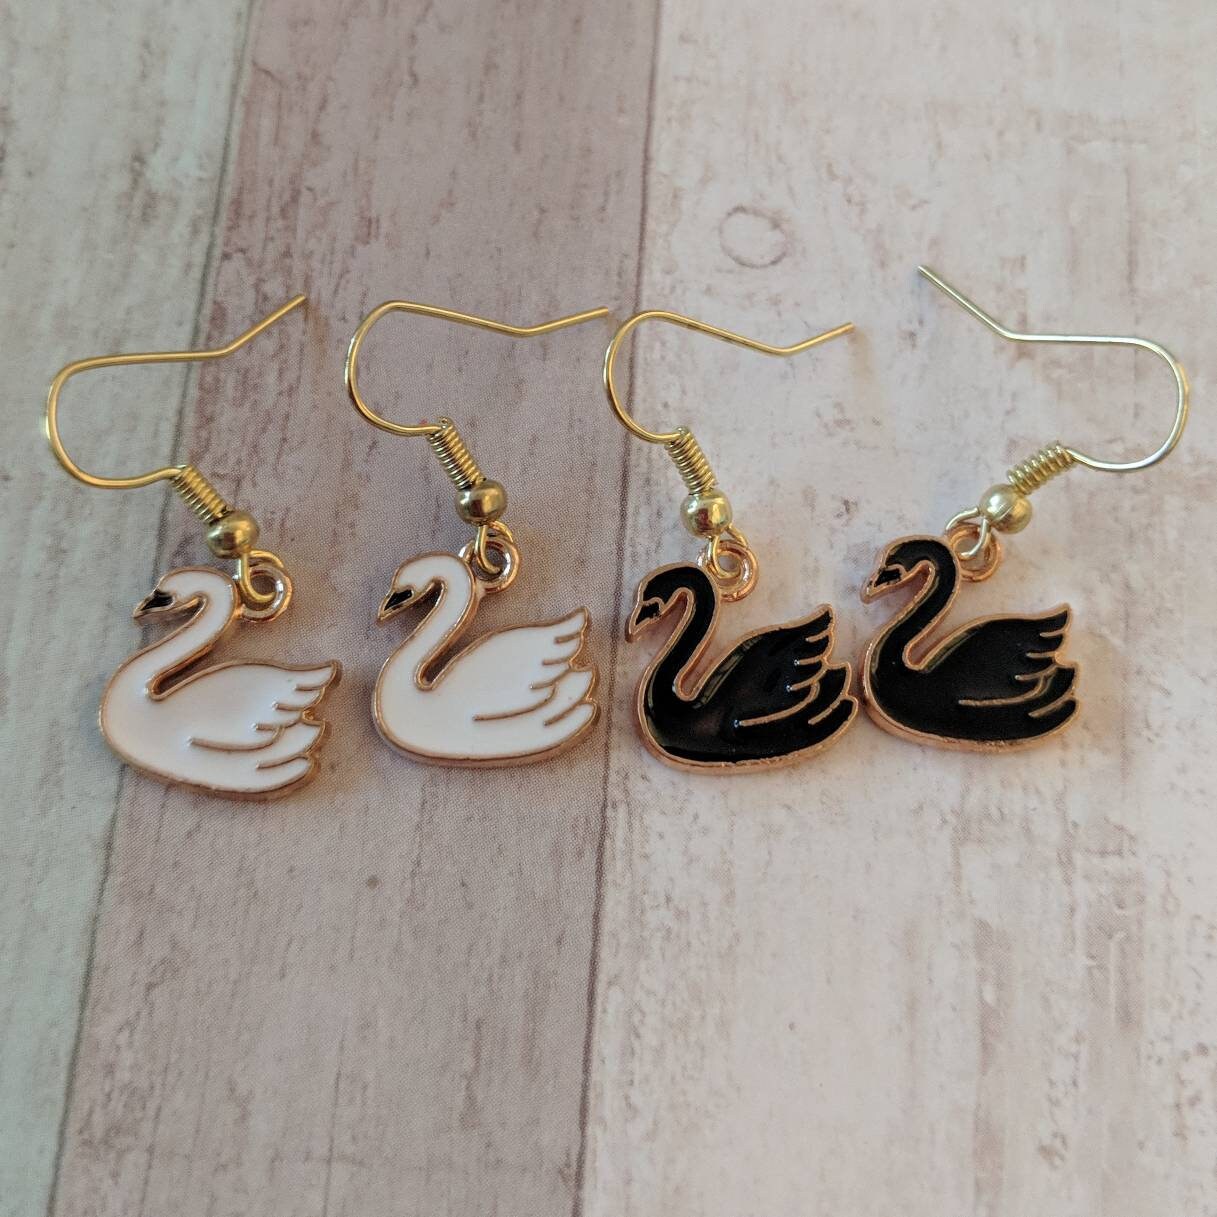 Swan Earrings, Dazzling Swan Drop Earrings, Iconic Swan Earrings, Swan Studs, Glam Earrings, Bird Drop Earrings, Animal Earring, Unique Gift